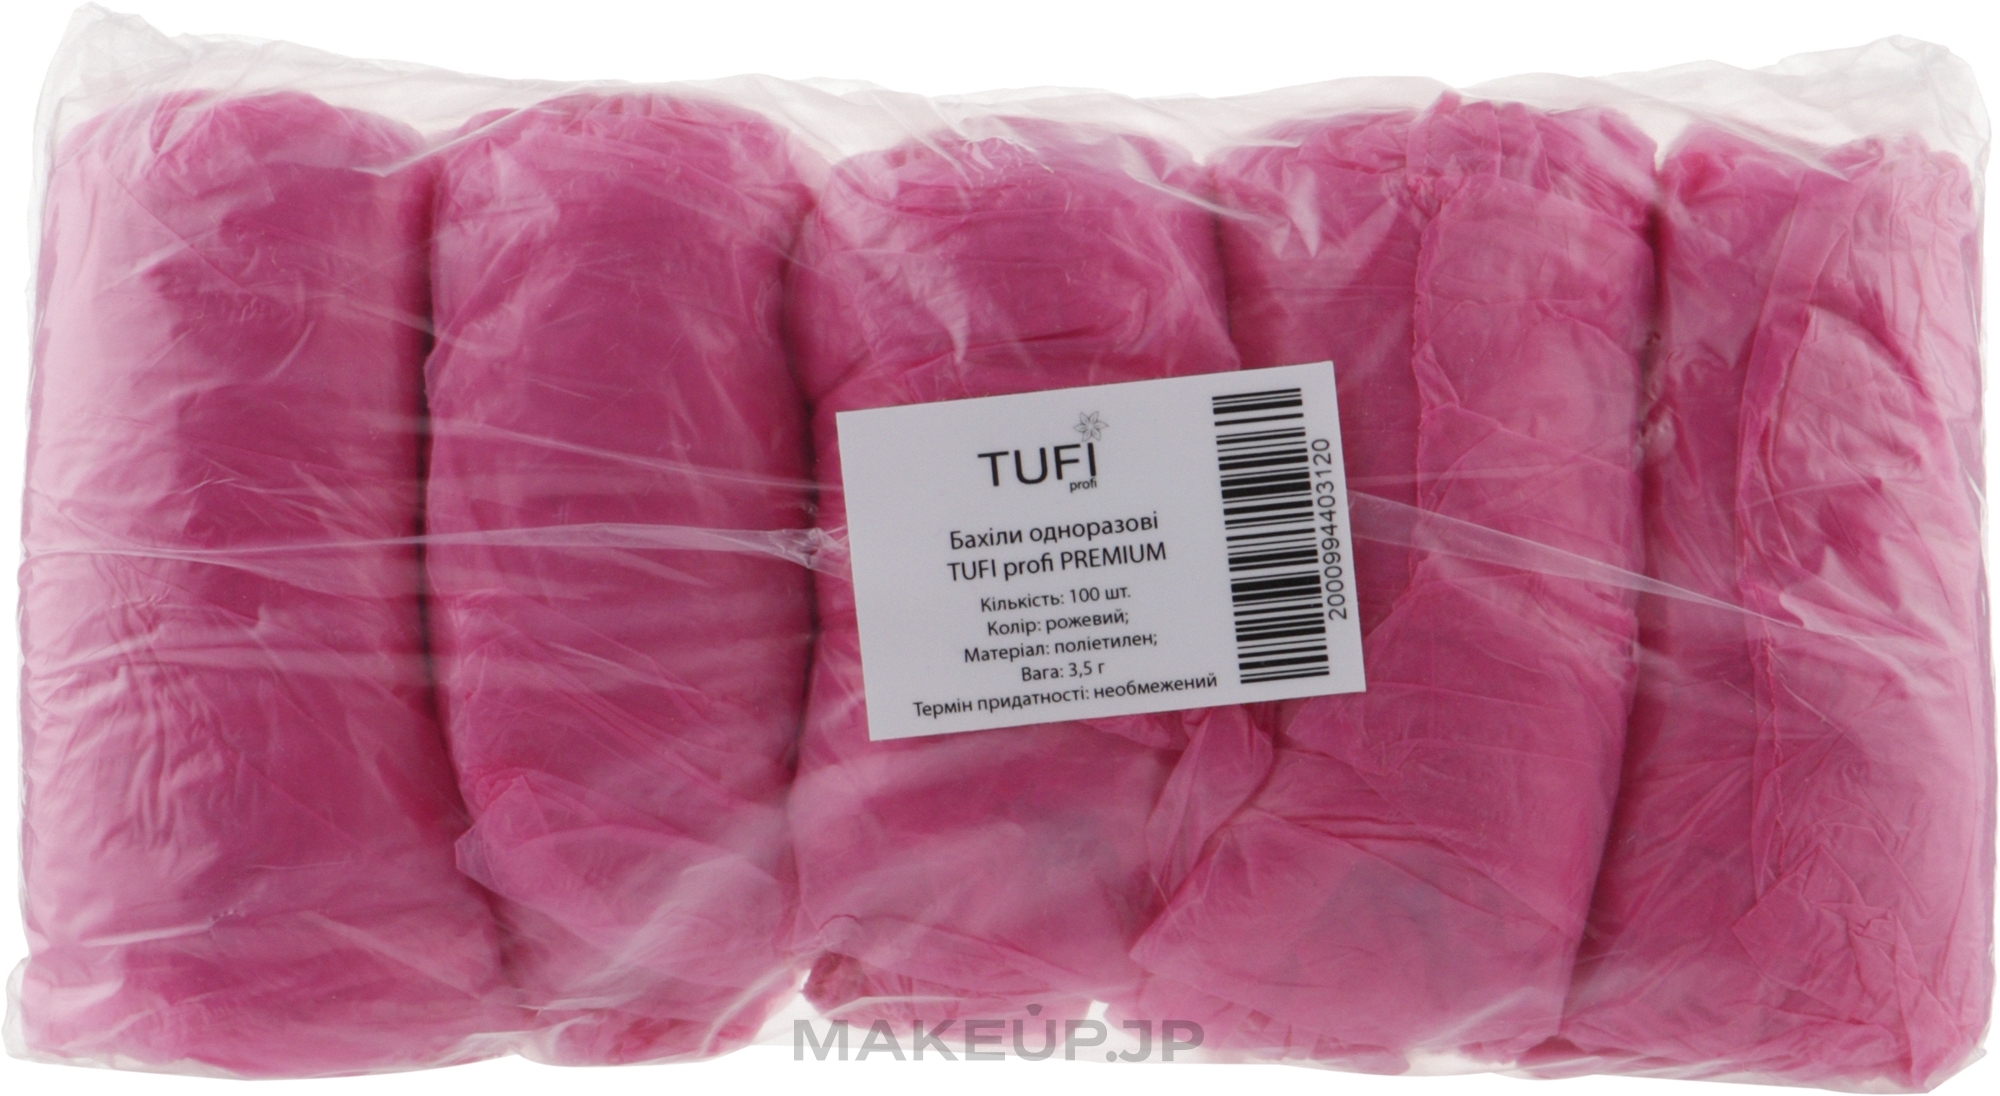 Disposable Shoe Covers, 3.5 g pink, 100 pcs - Tuffi Proffi Premium — photo 100 szt.